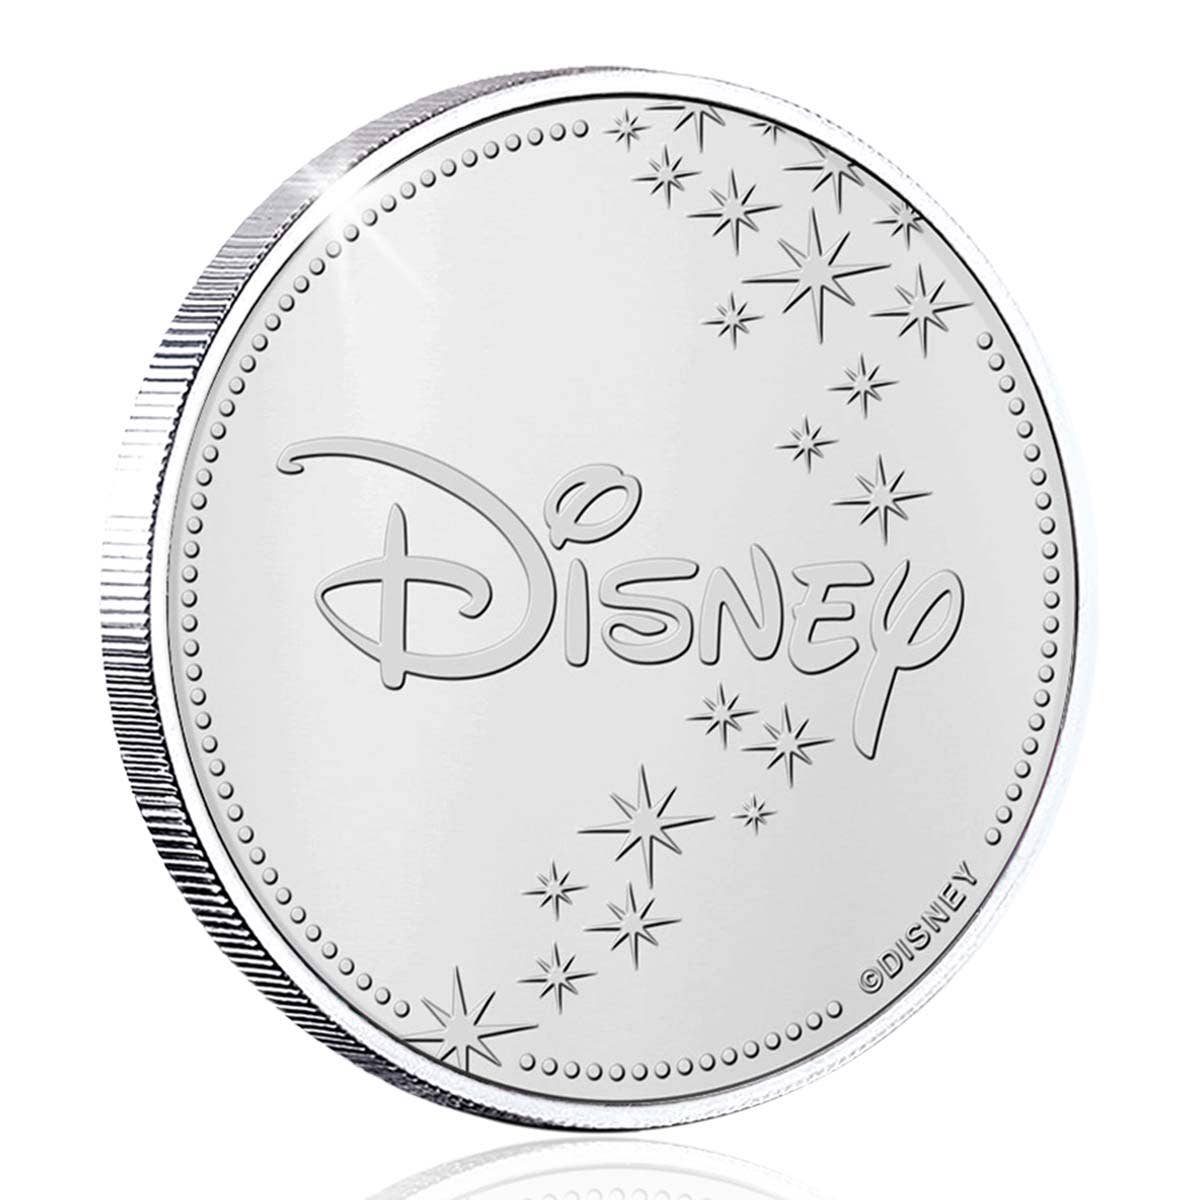 Disney Mickey in Australia Silver-plated Commemorative